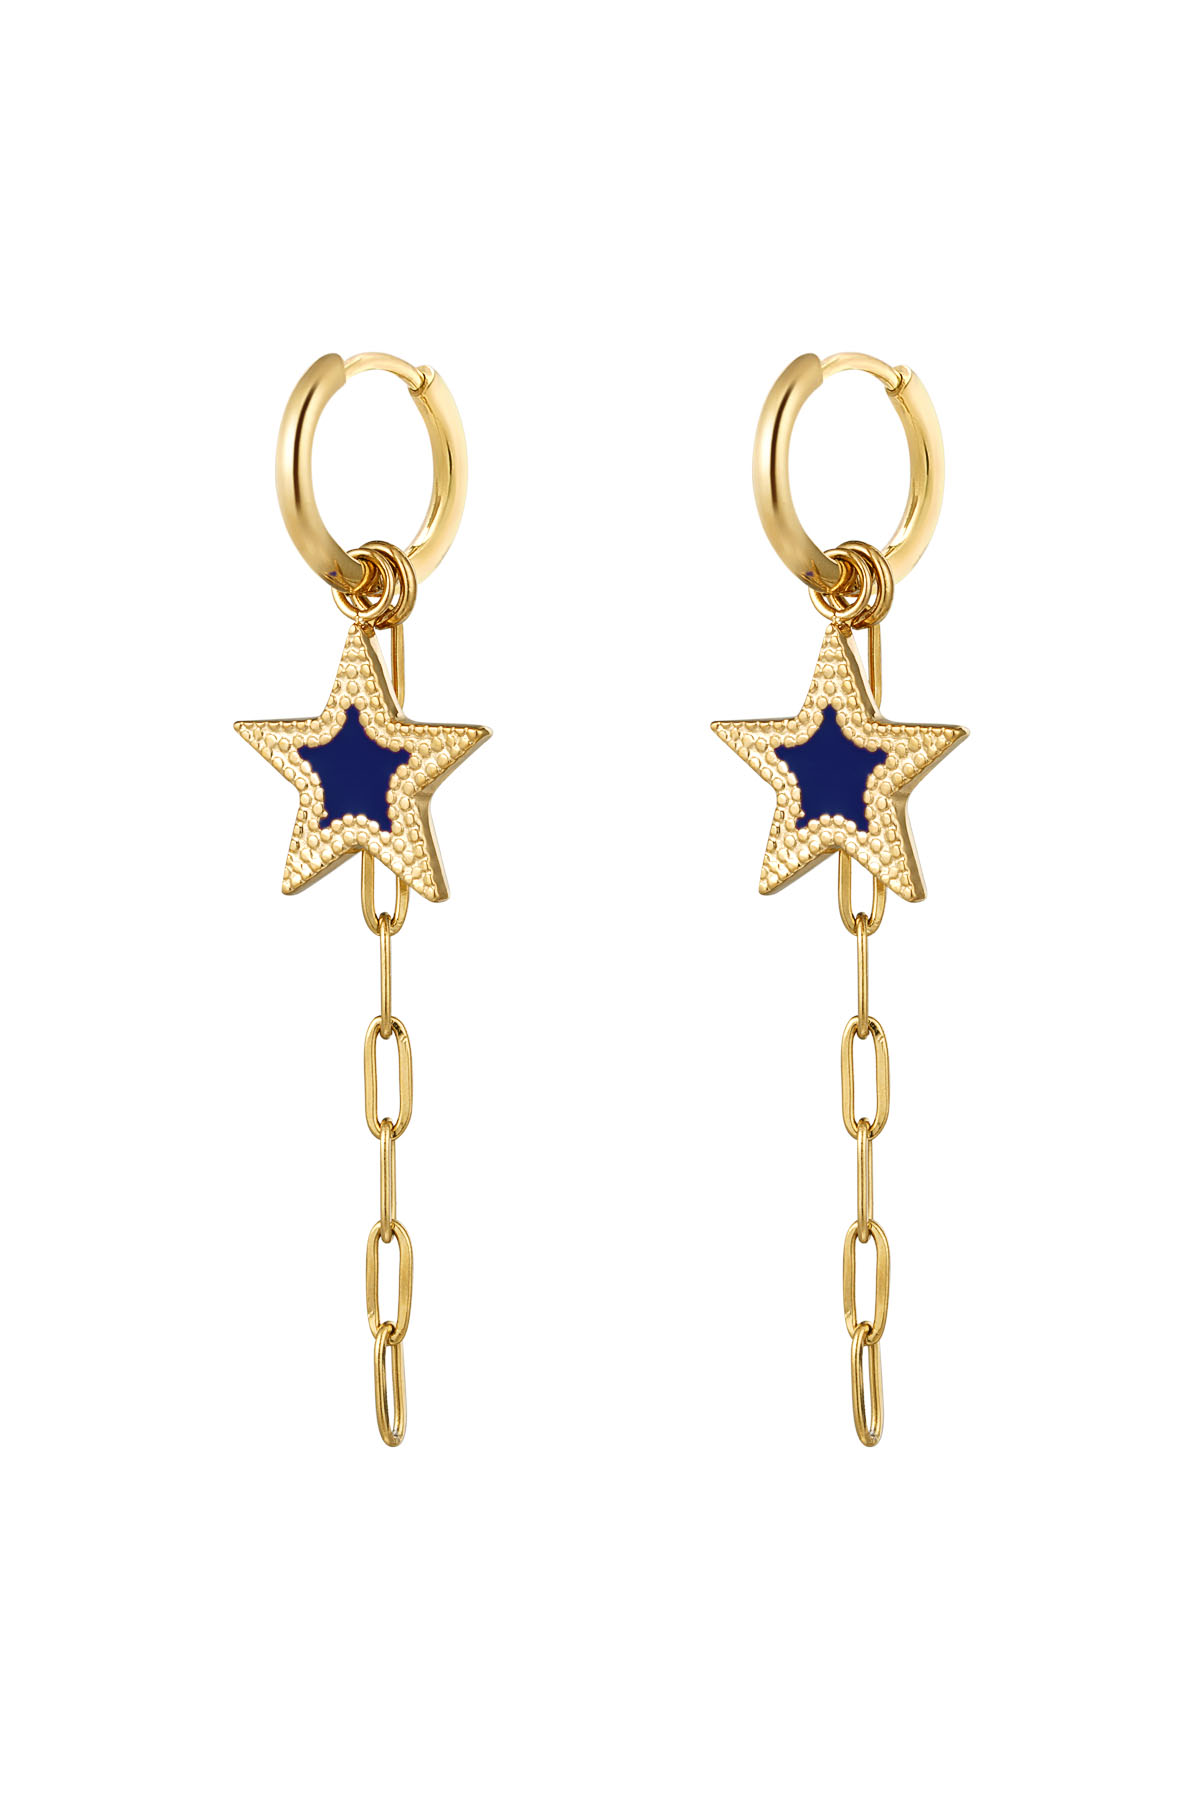 orecchini con stella e catena blu - oro 